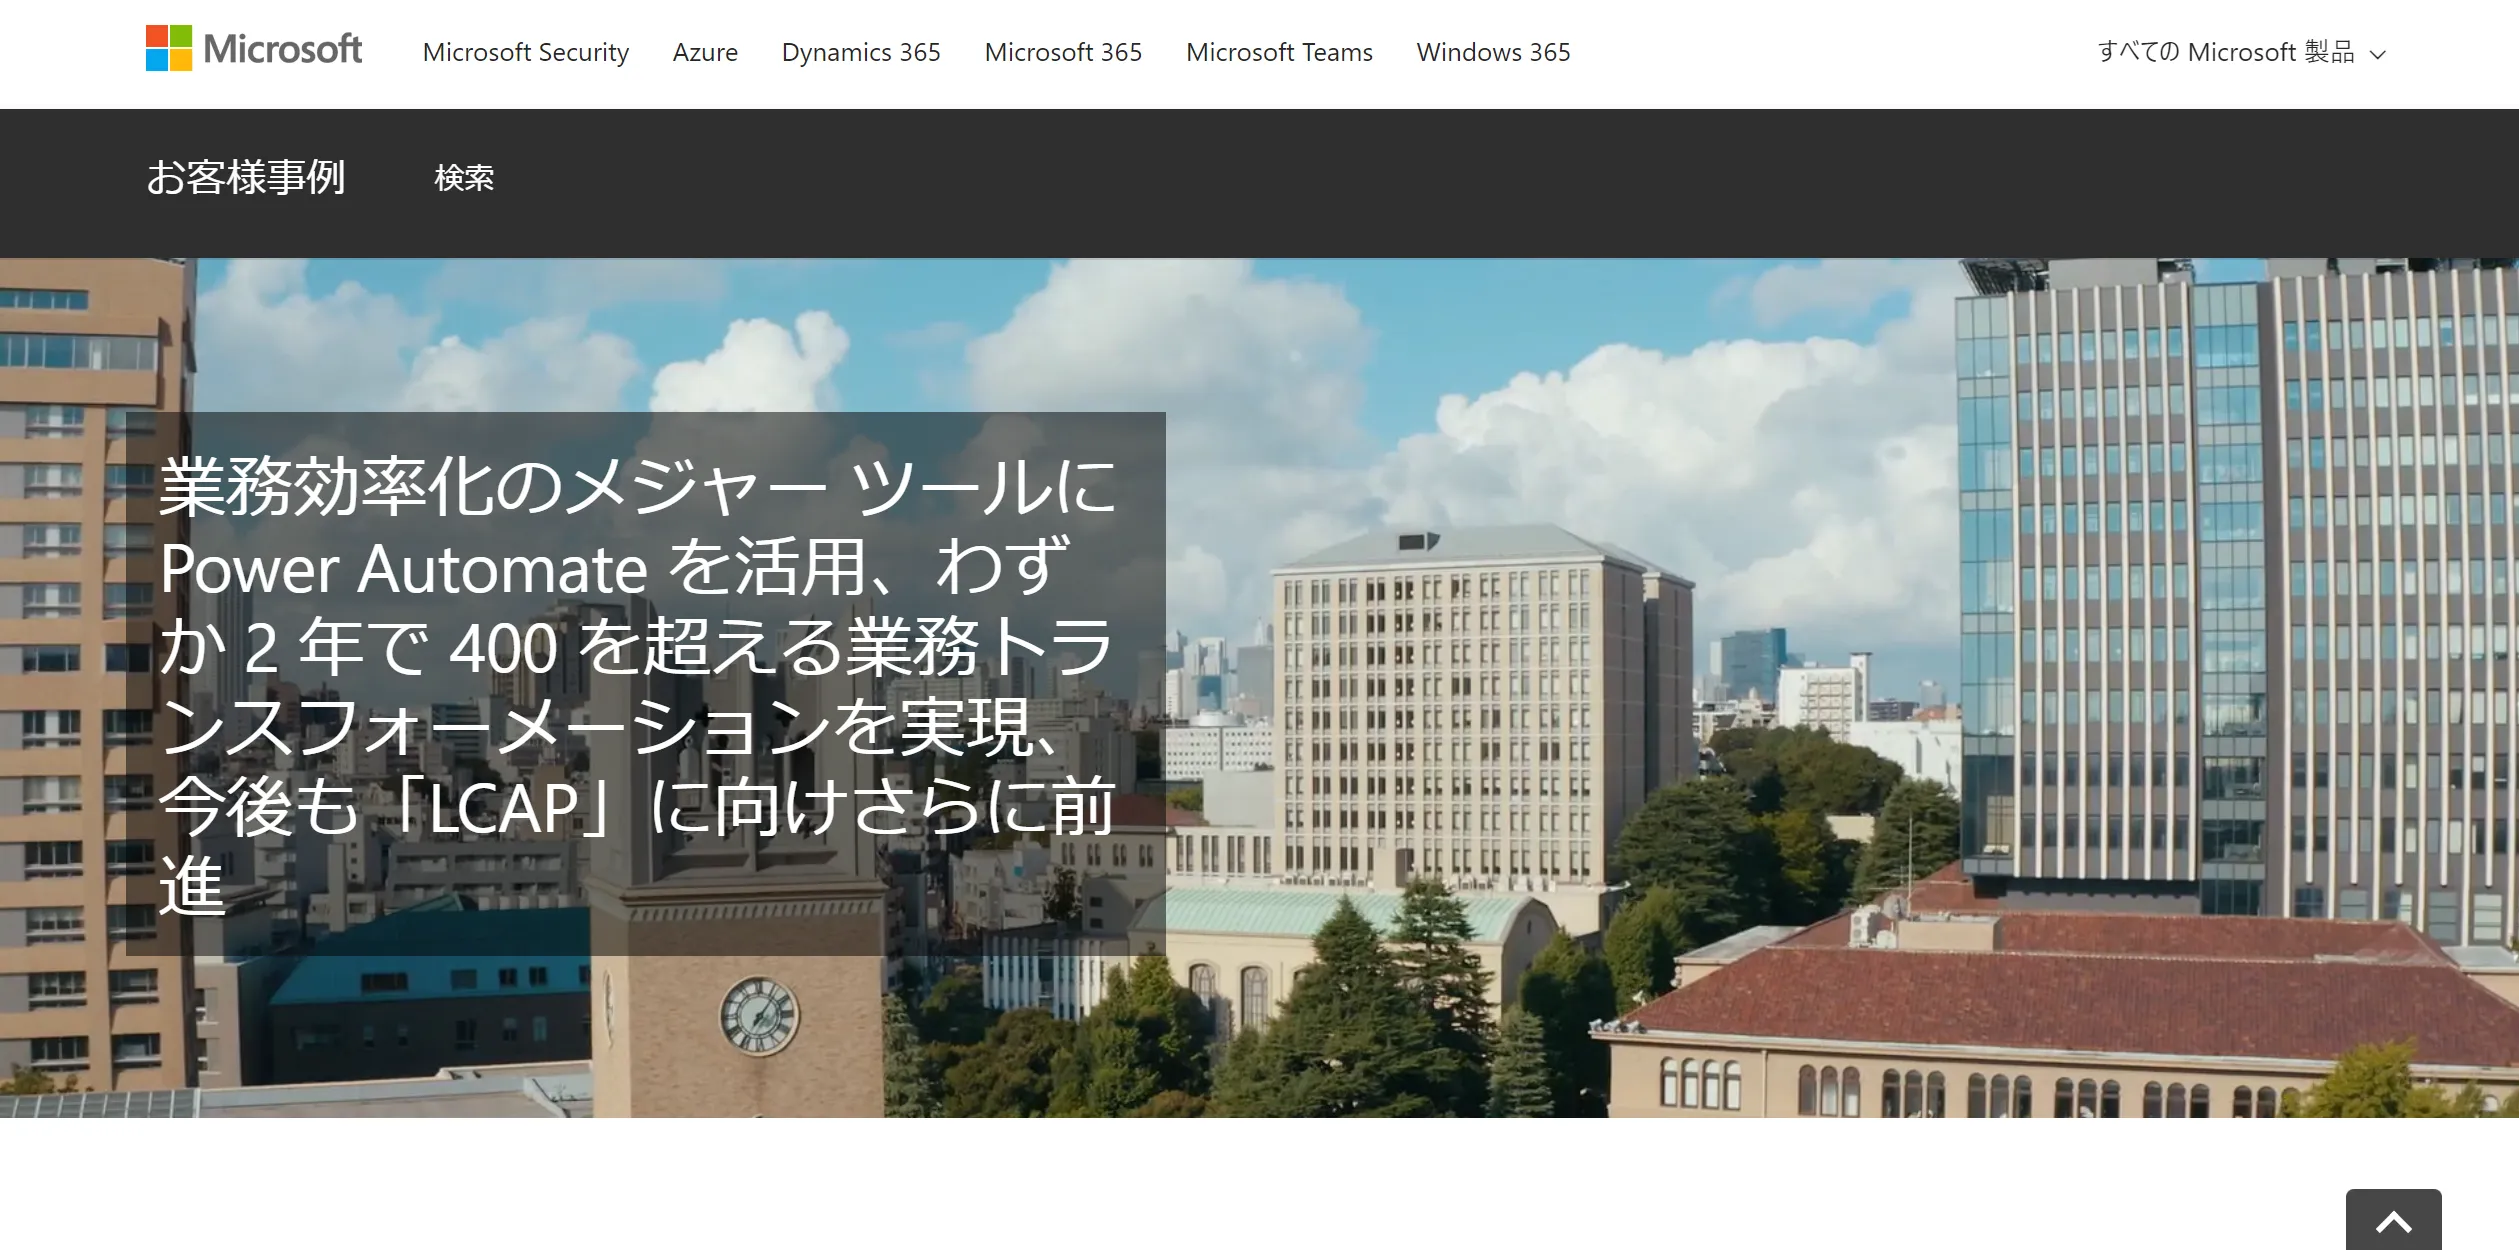 早稲田大学のデジタル改革と自動化への挑戦